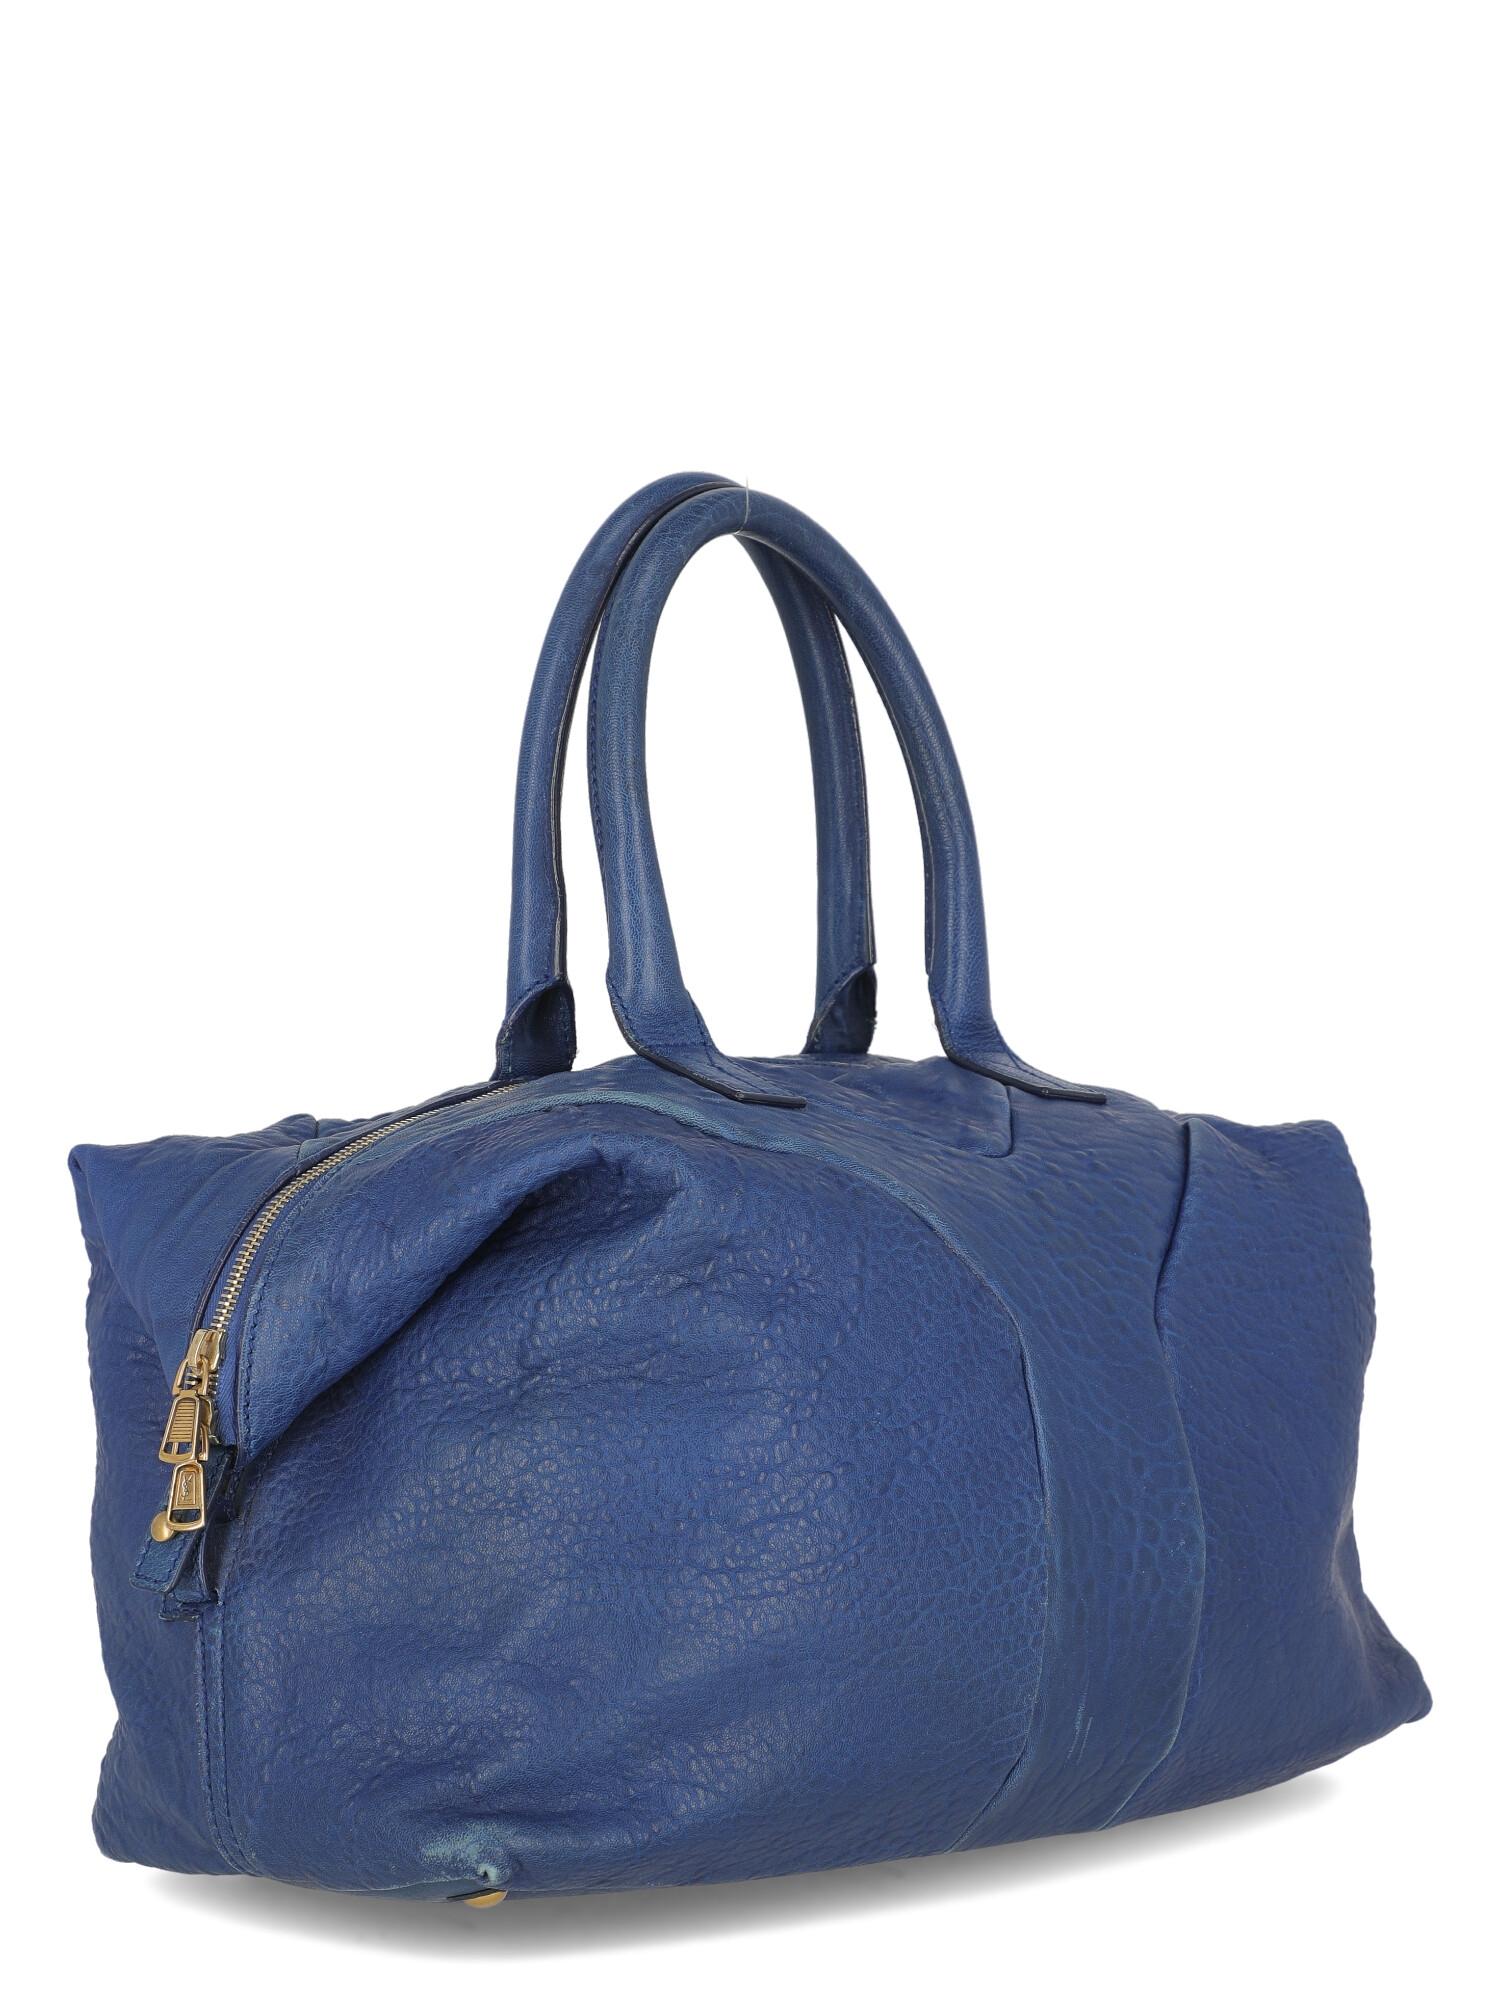 Blue Saint Laurent Woman Handbag Navy Leather For Sale